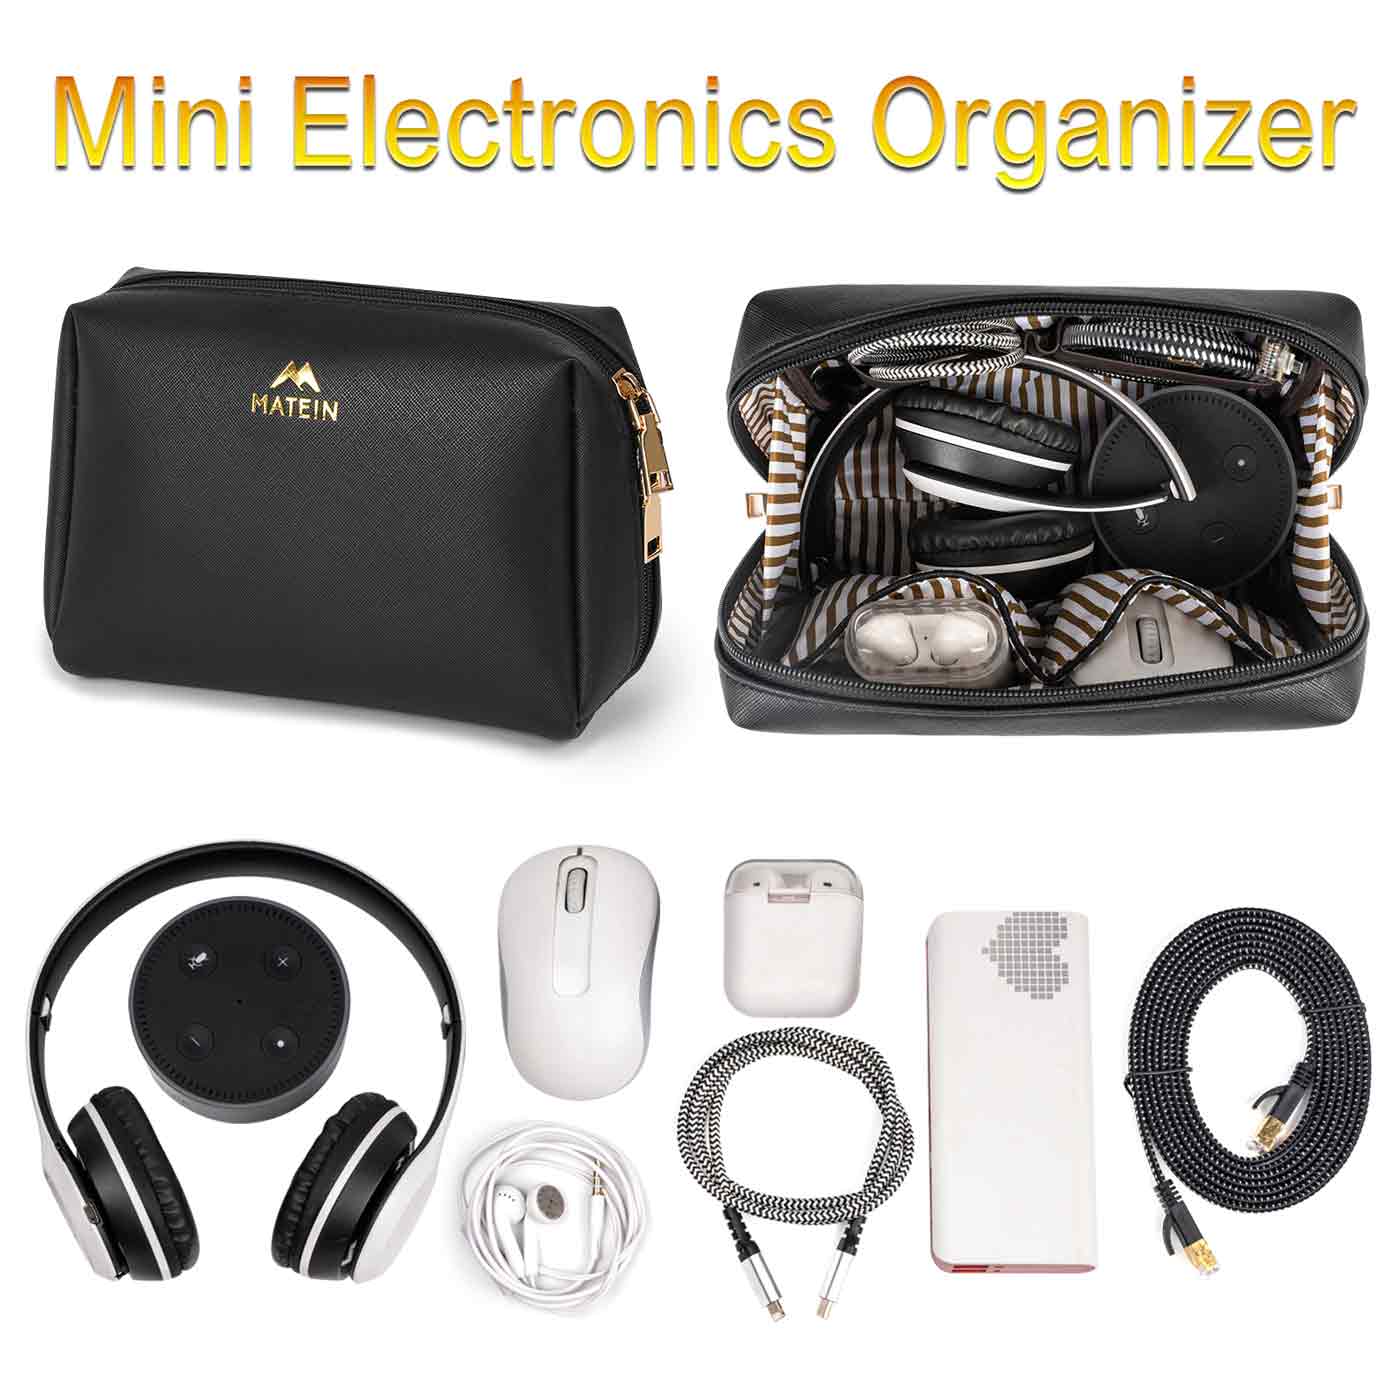 Electronic OrganizerMatein Electronic Organizer Bag